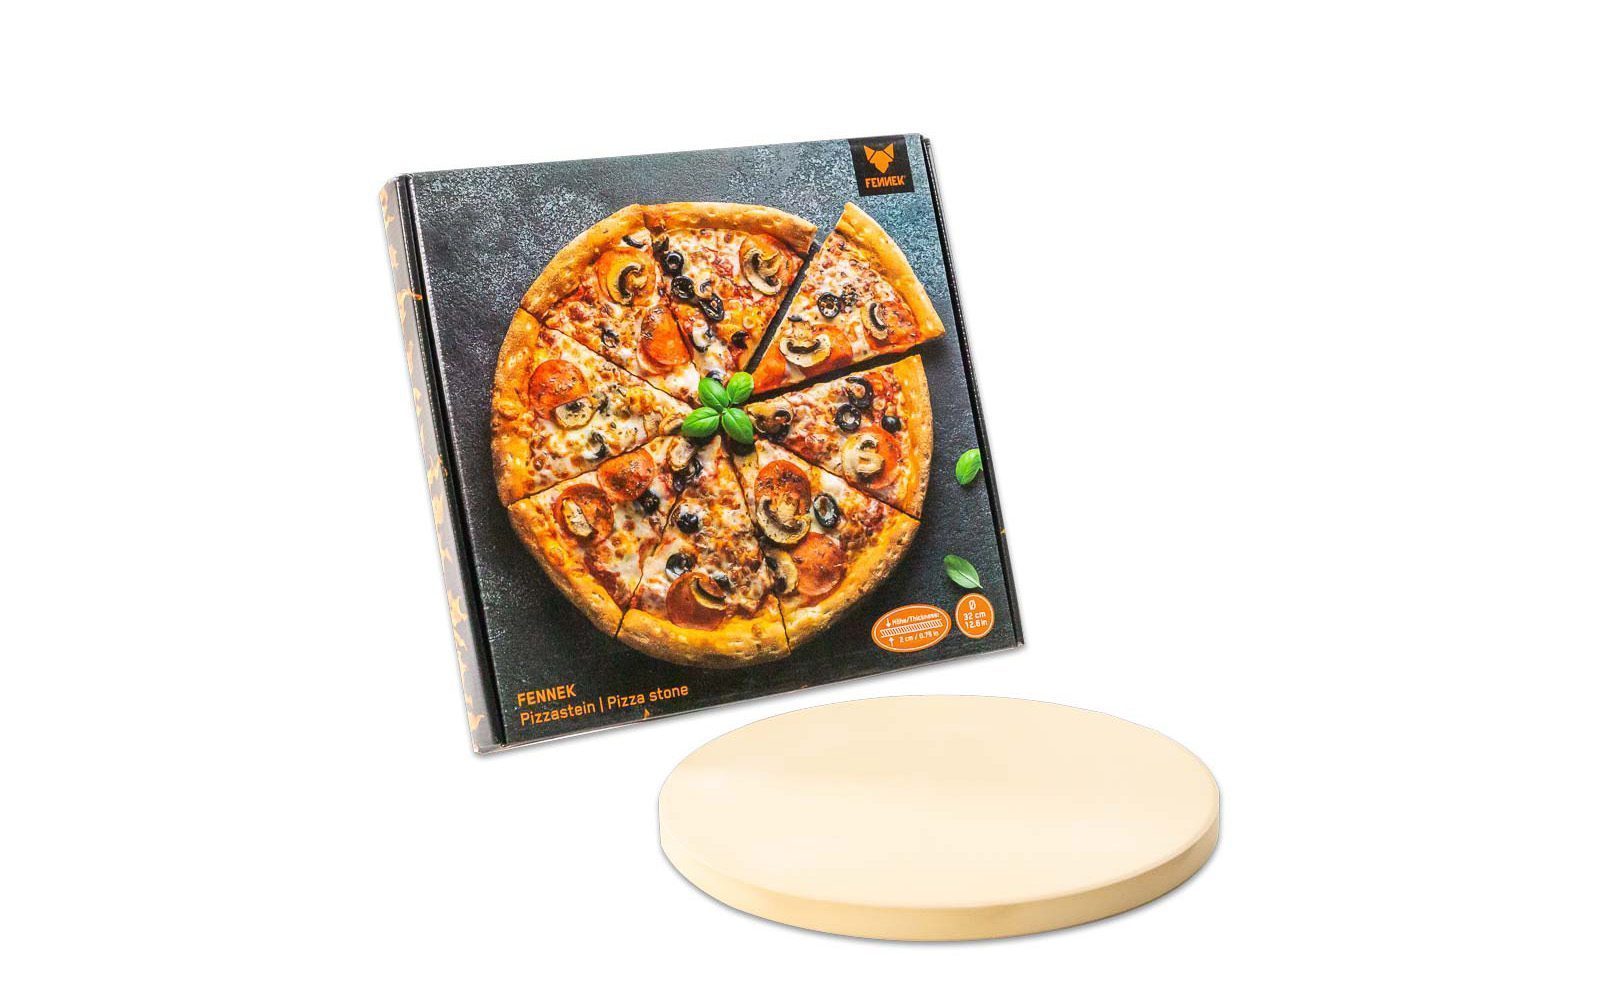 Produktverpackung und Pizzastein davor auf weißem Hintergrund